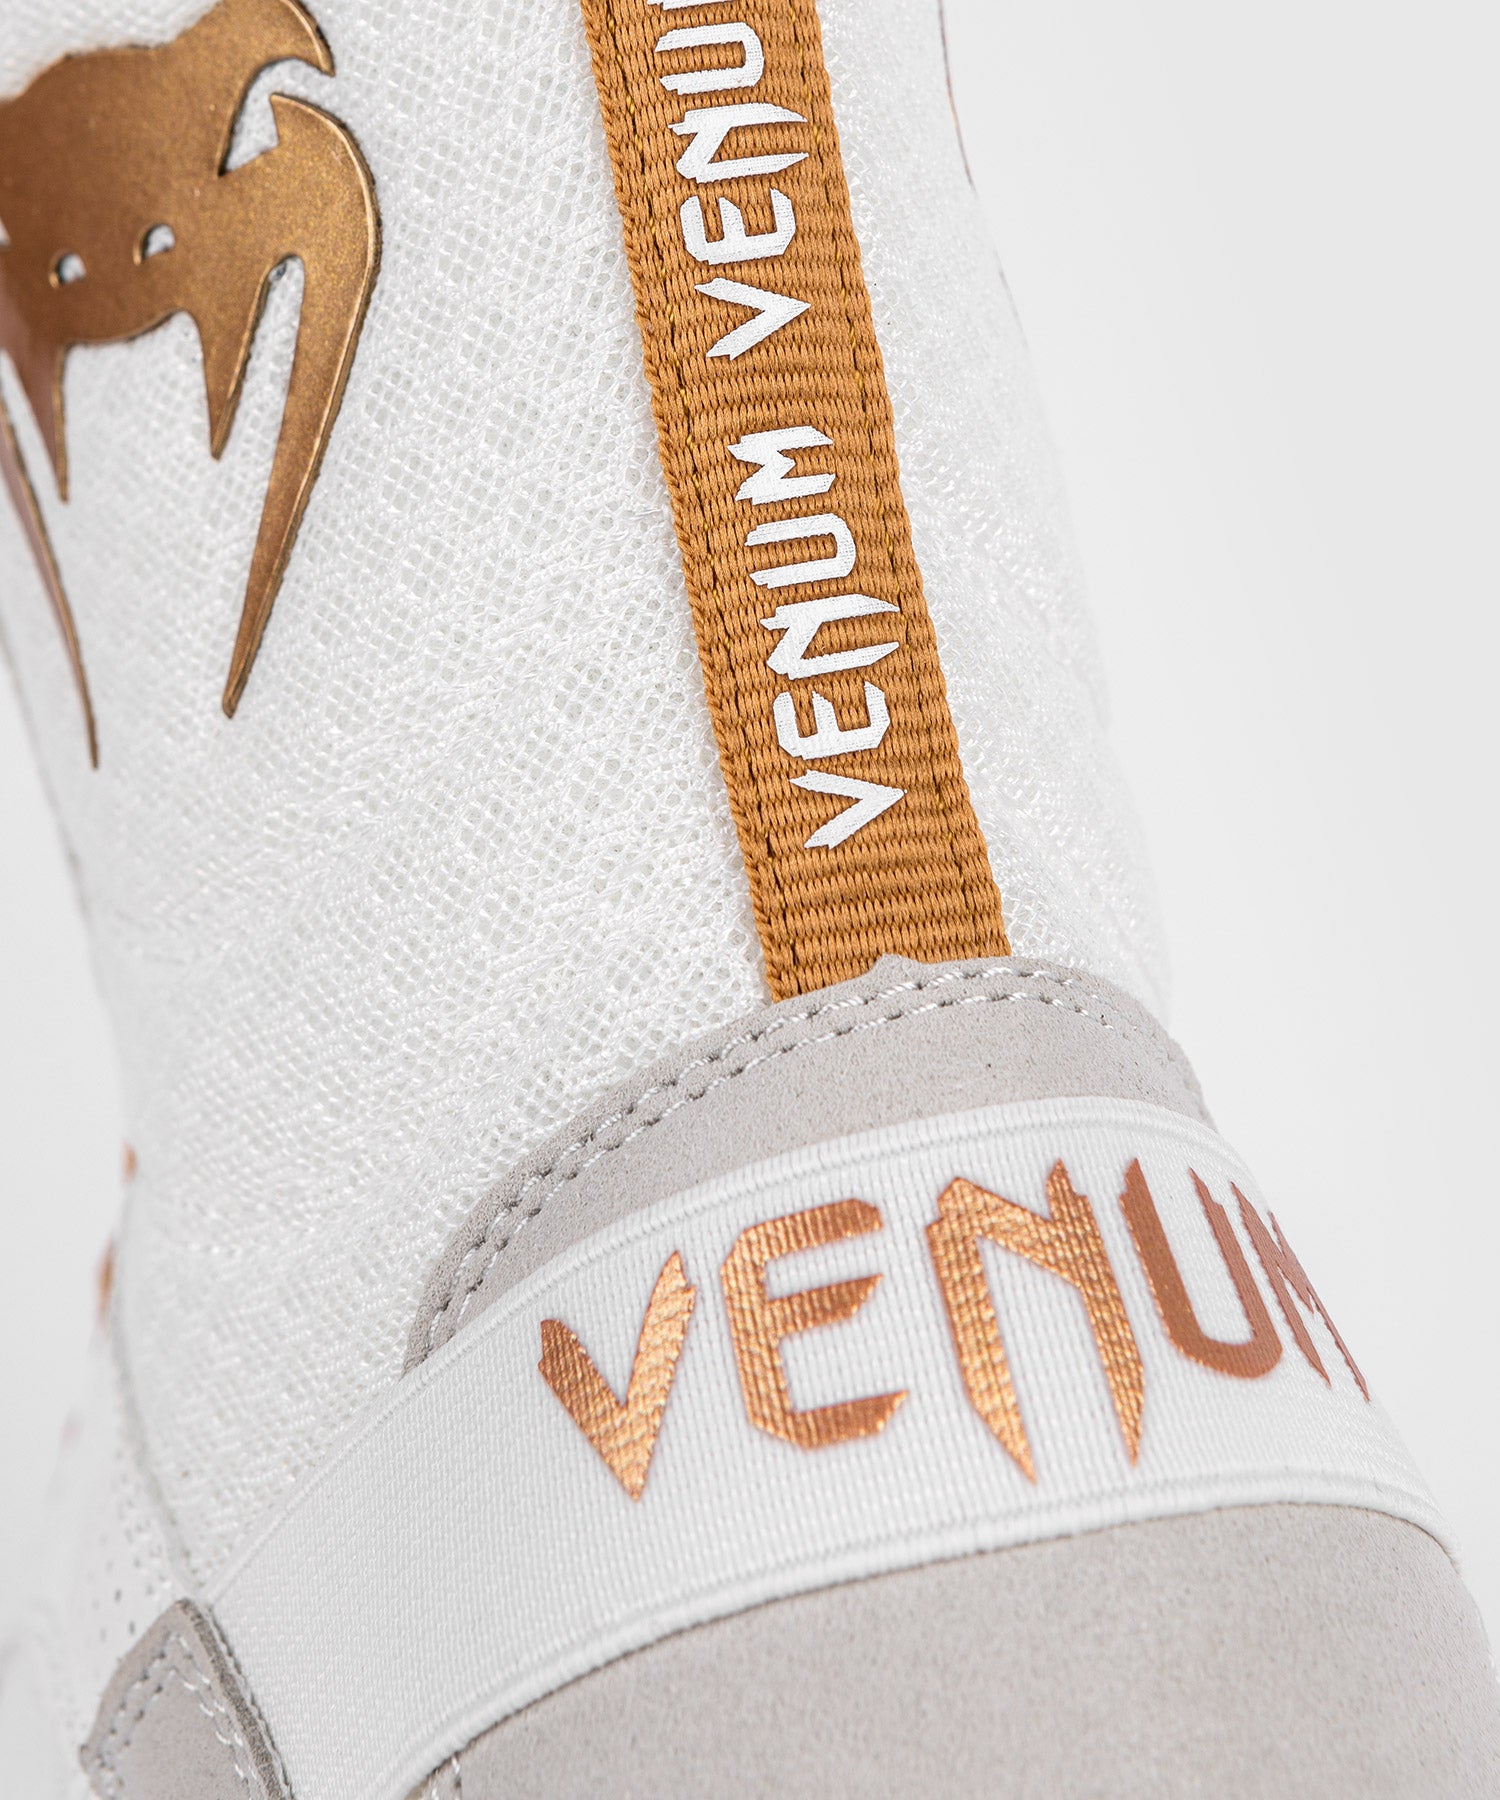 Gants de boxe Venum Elite - Blanc/Doré – Venum France